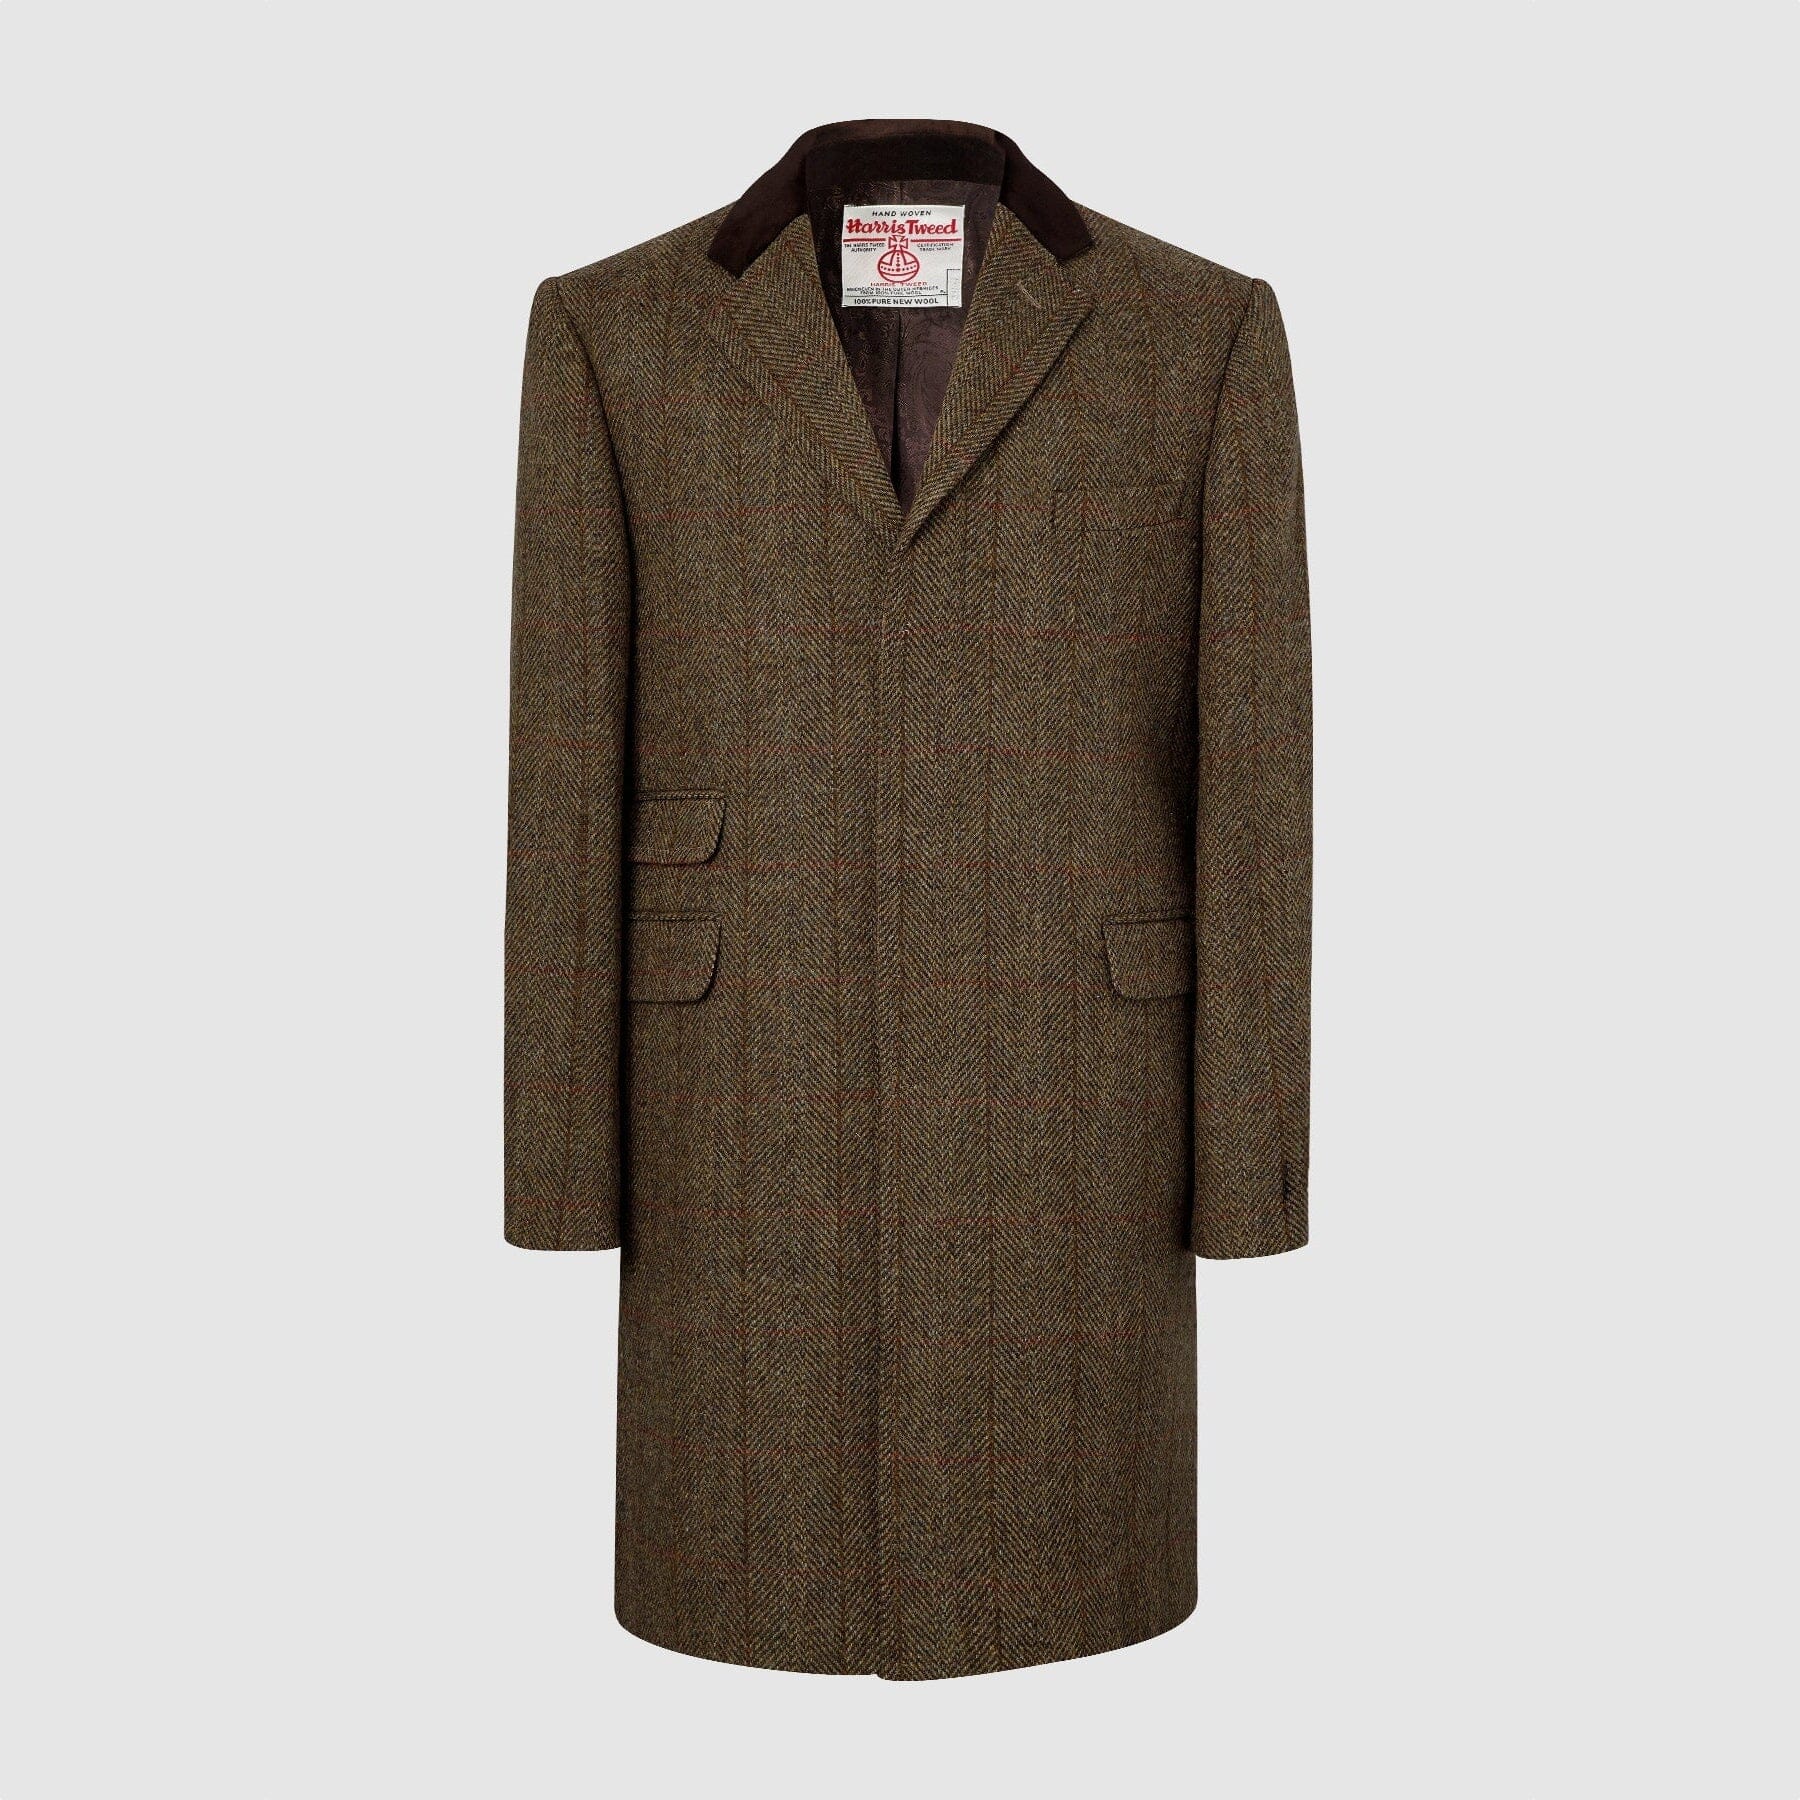 Billede af Chelsea Mens Overcoat frakke, brun herringbone, Harris Tweed - 40 UK (50 EU)